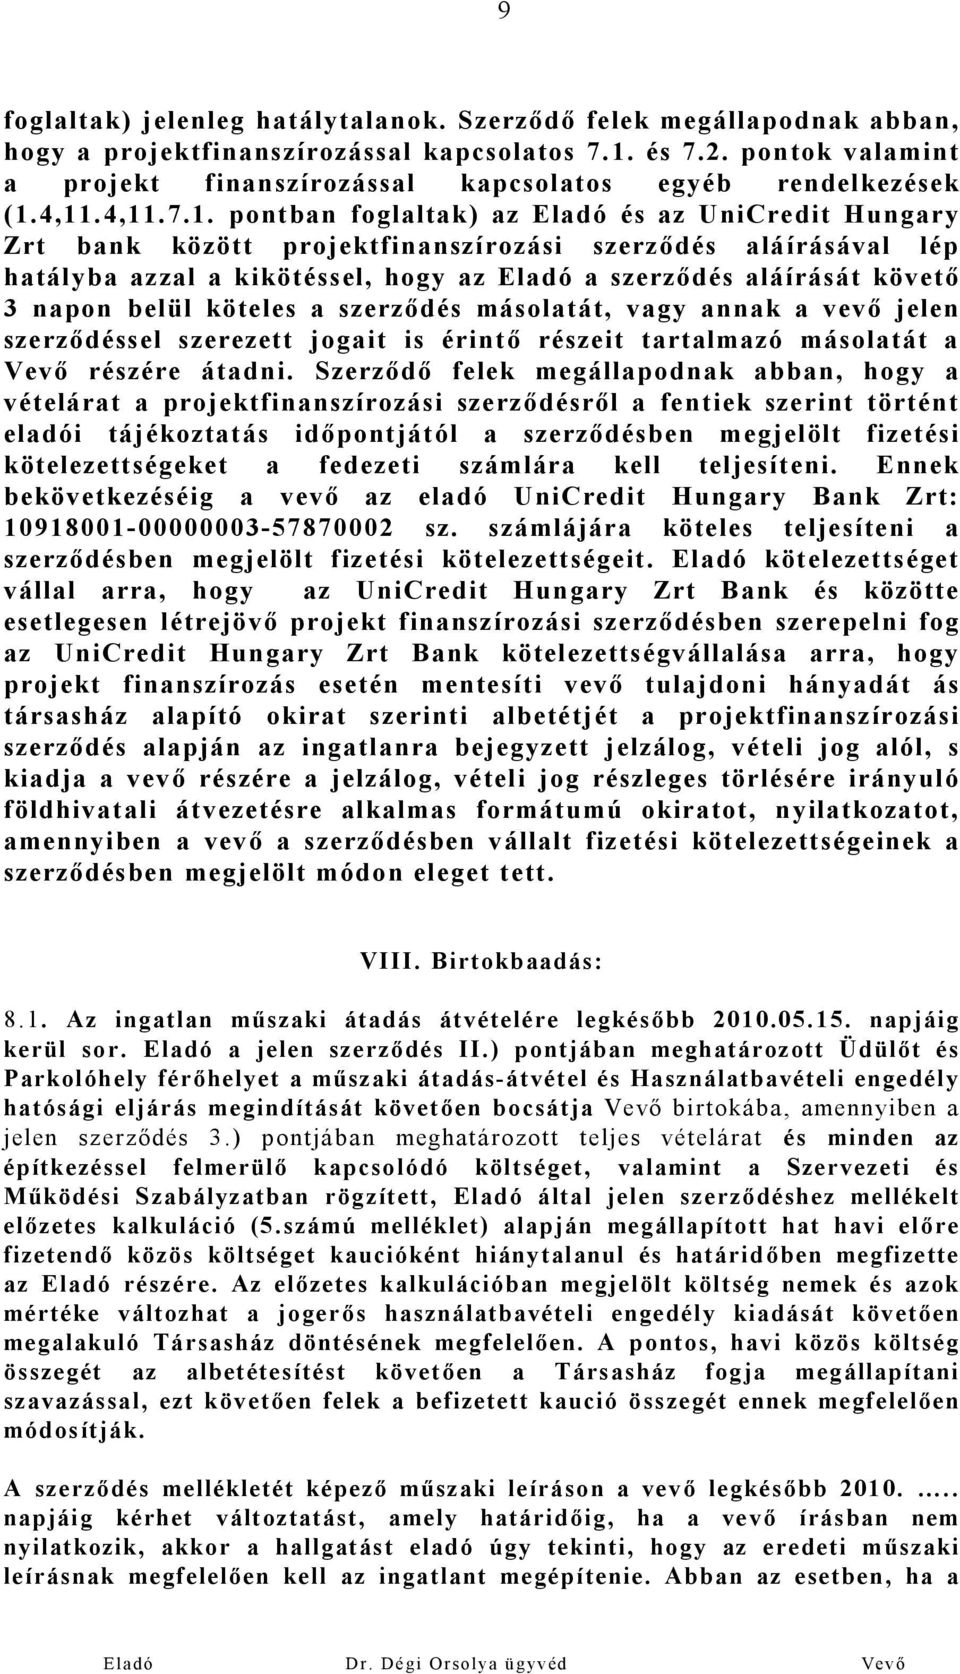 4,11.4,11.7.1. pontban foglaltak) az Eladó és az UniCredit Hungary Zrt bank között projektfinanszírozási szerződés aláírásával lép hatályba azzal a kikötéssel, hogy az Eladó a szerződés aláírását